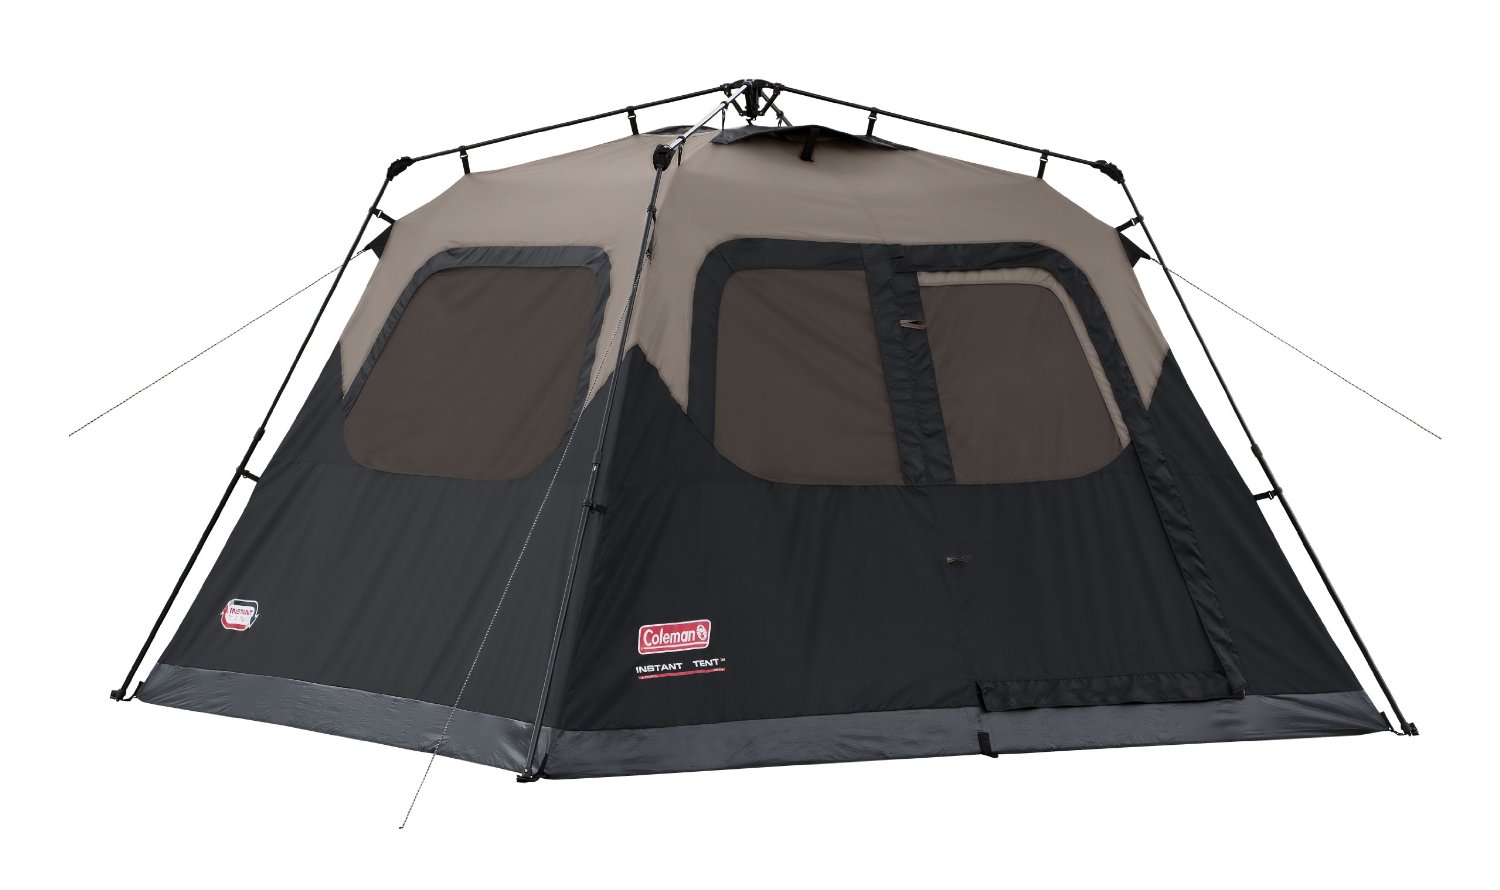 Coleman Instant Cabin Tent